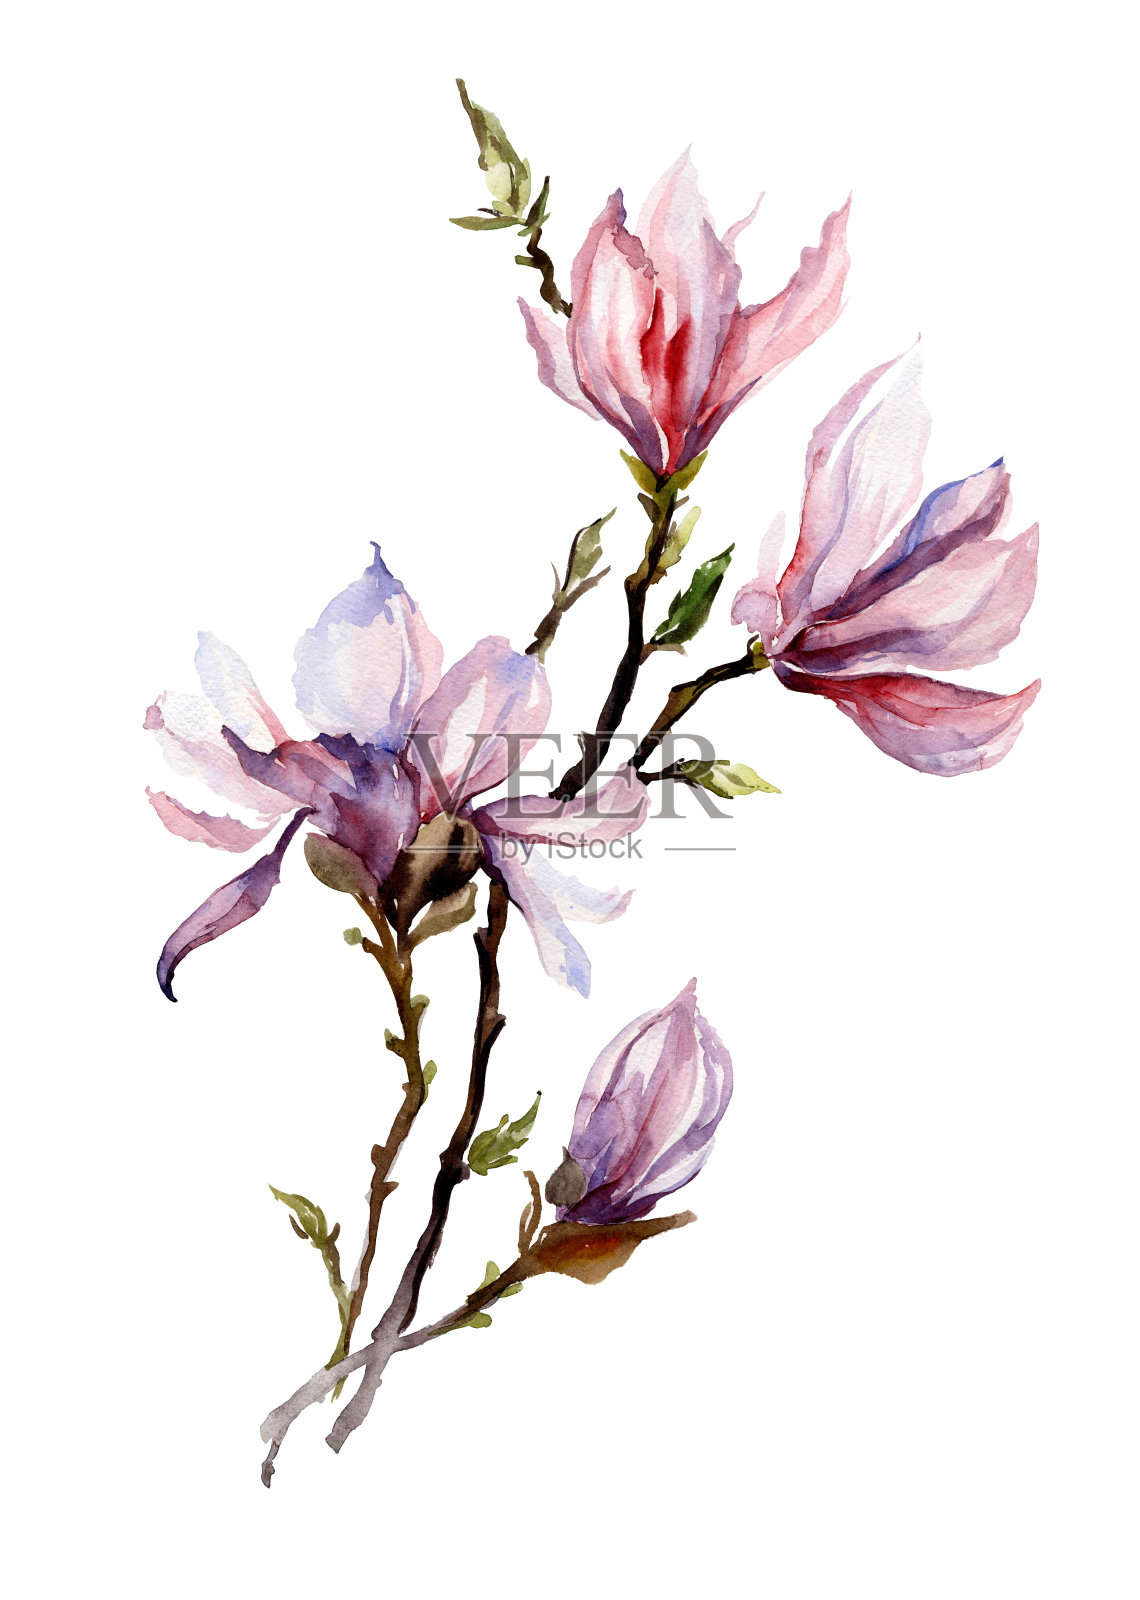 粉红色的木兰花在小枝上。孤立在白色背景上。水彩画。插画图片素材